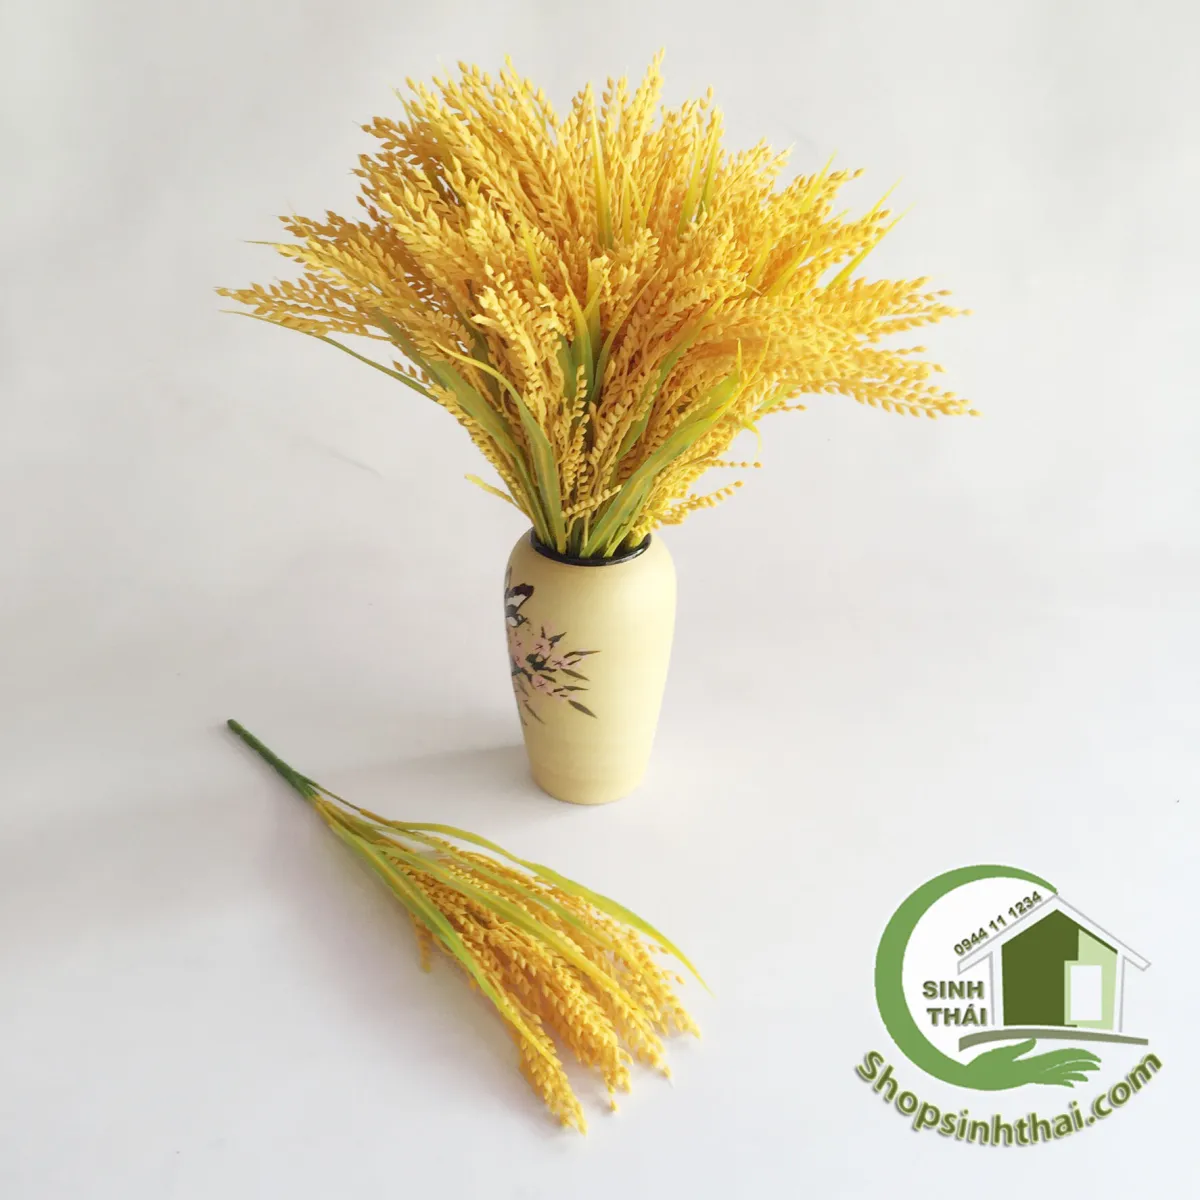 HCM]Bụi cây bông lúa vàng - cây hoa giả trang trí nhà cửa - phụ ...